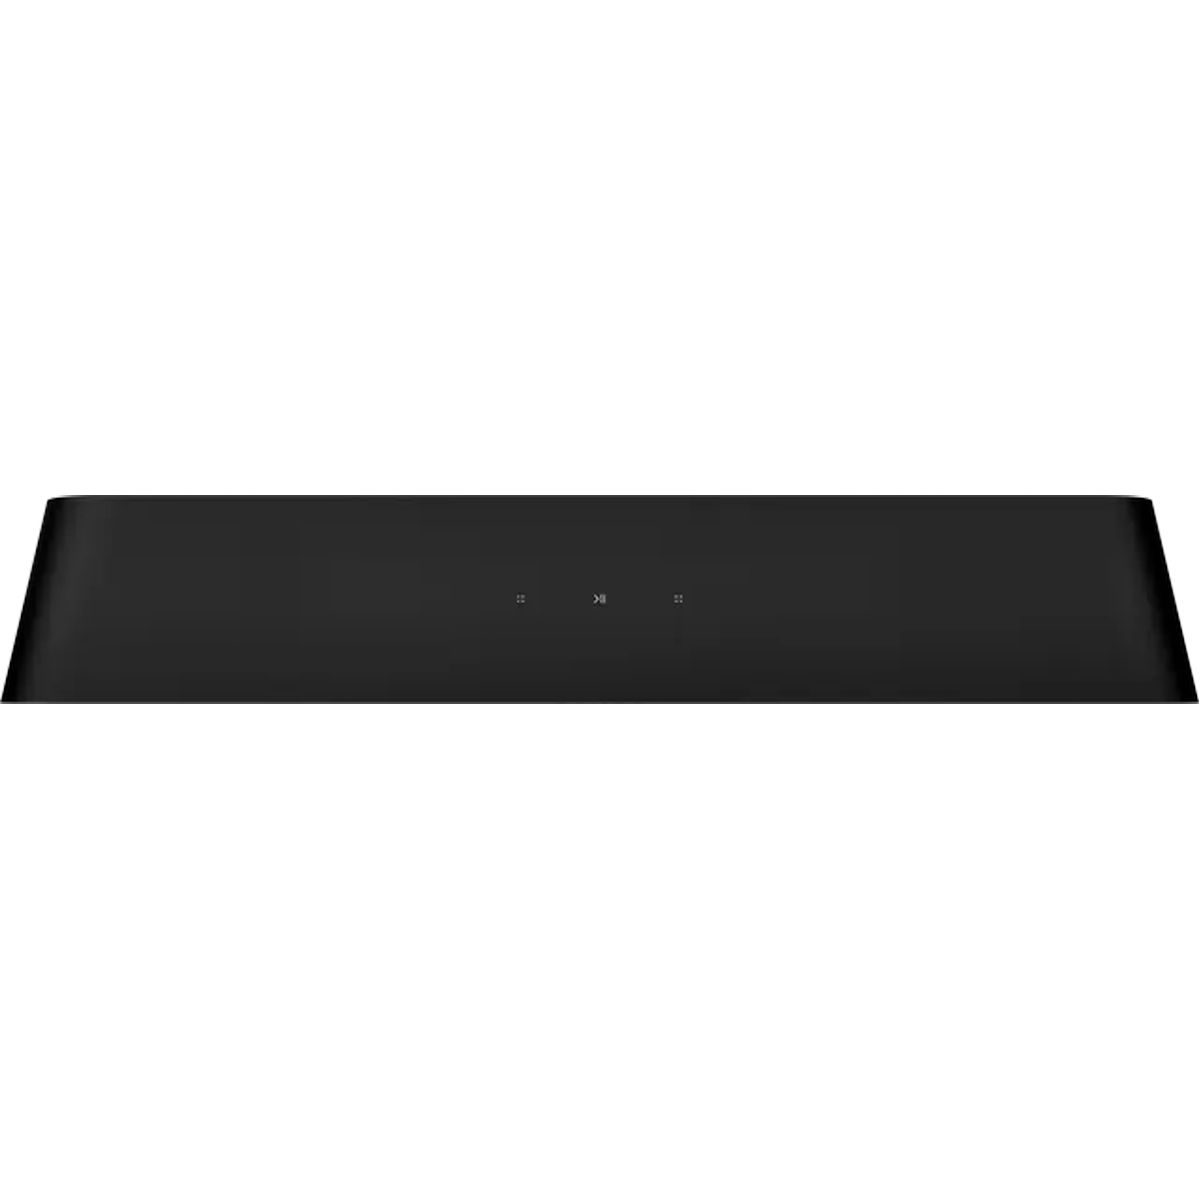 Sonos Ray Compact Soundbar - Black - top view